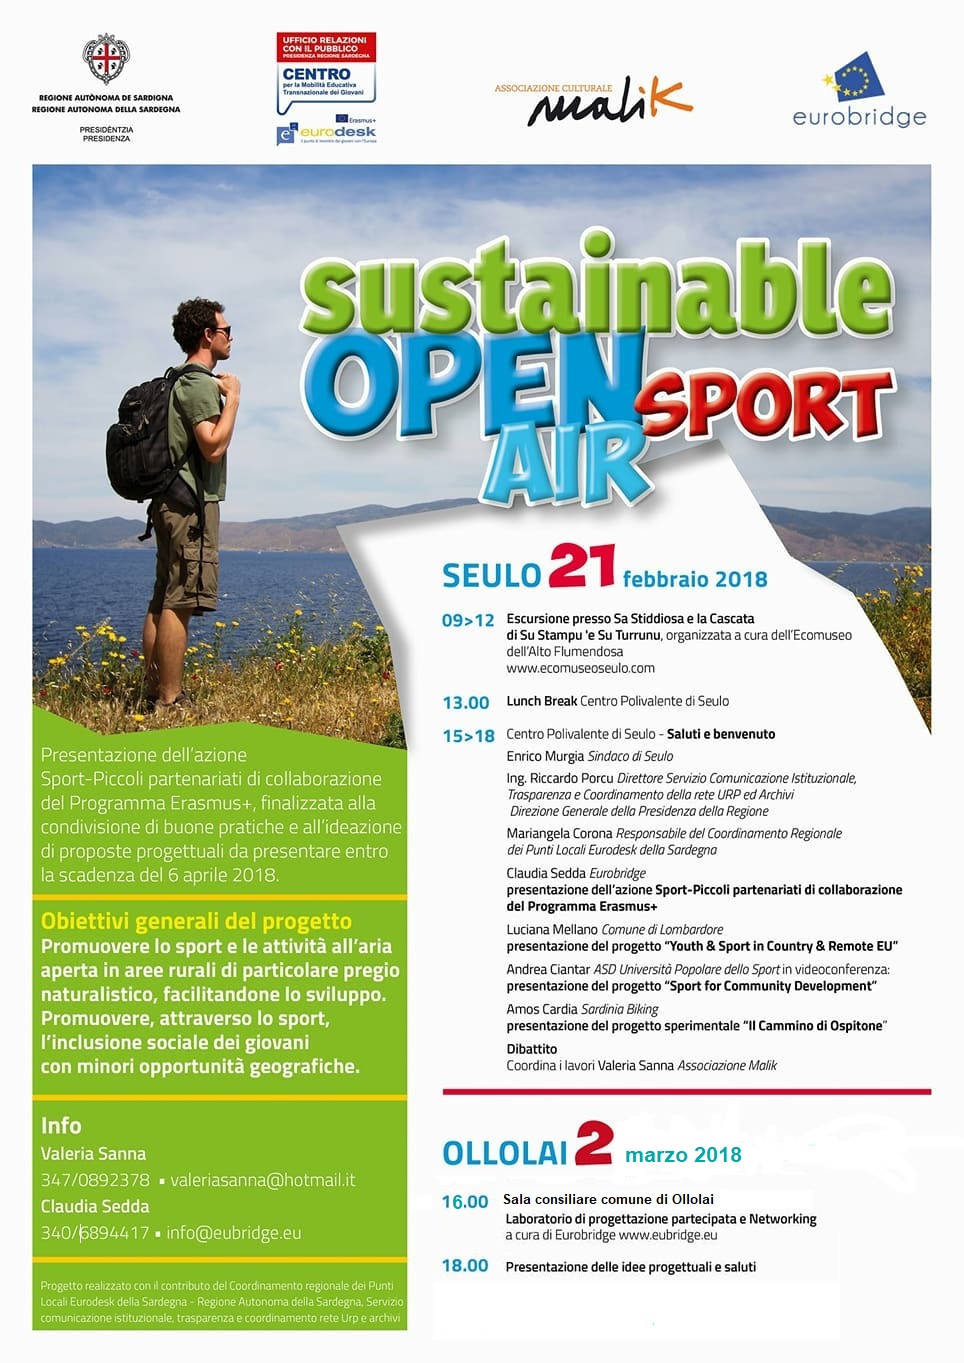 Seconda giornata Sustainable Open Air Sport (SOAS)                                                        Venerdì 2 marzo presso la Sala Consiliare del Comune di Ollolai